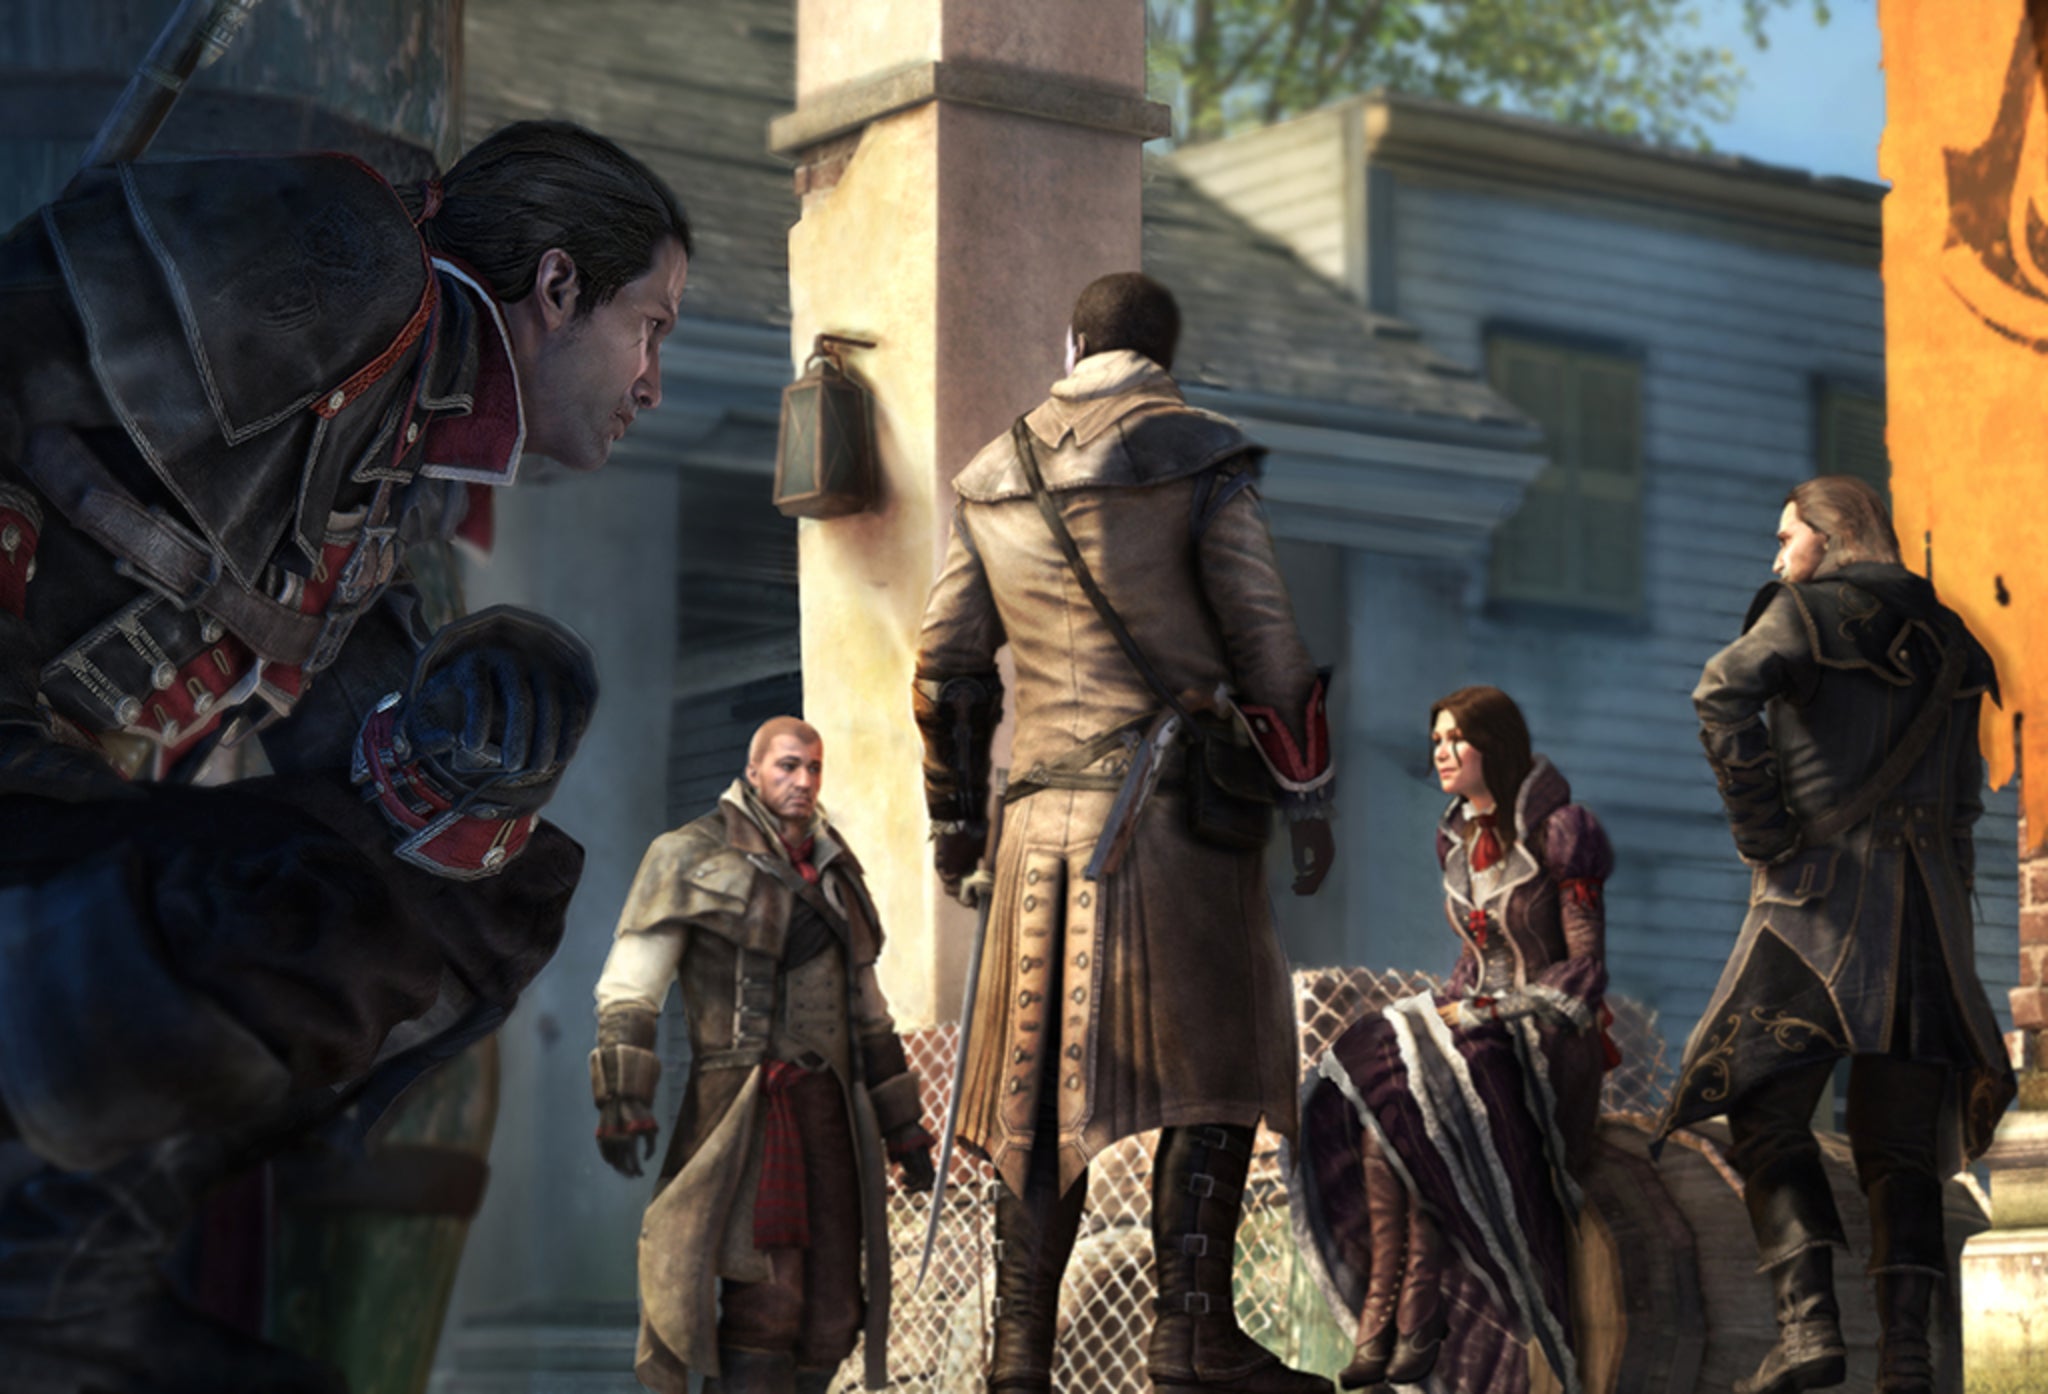 Assassin's Creed Rogue - Life as a Templar [ES] 